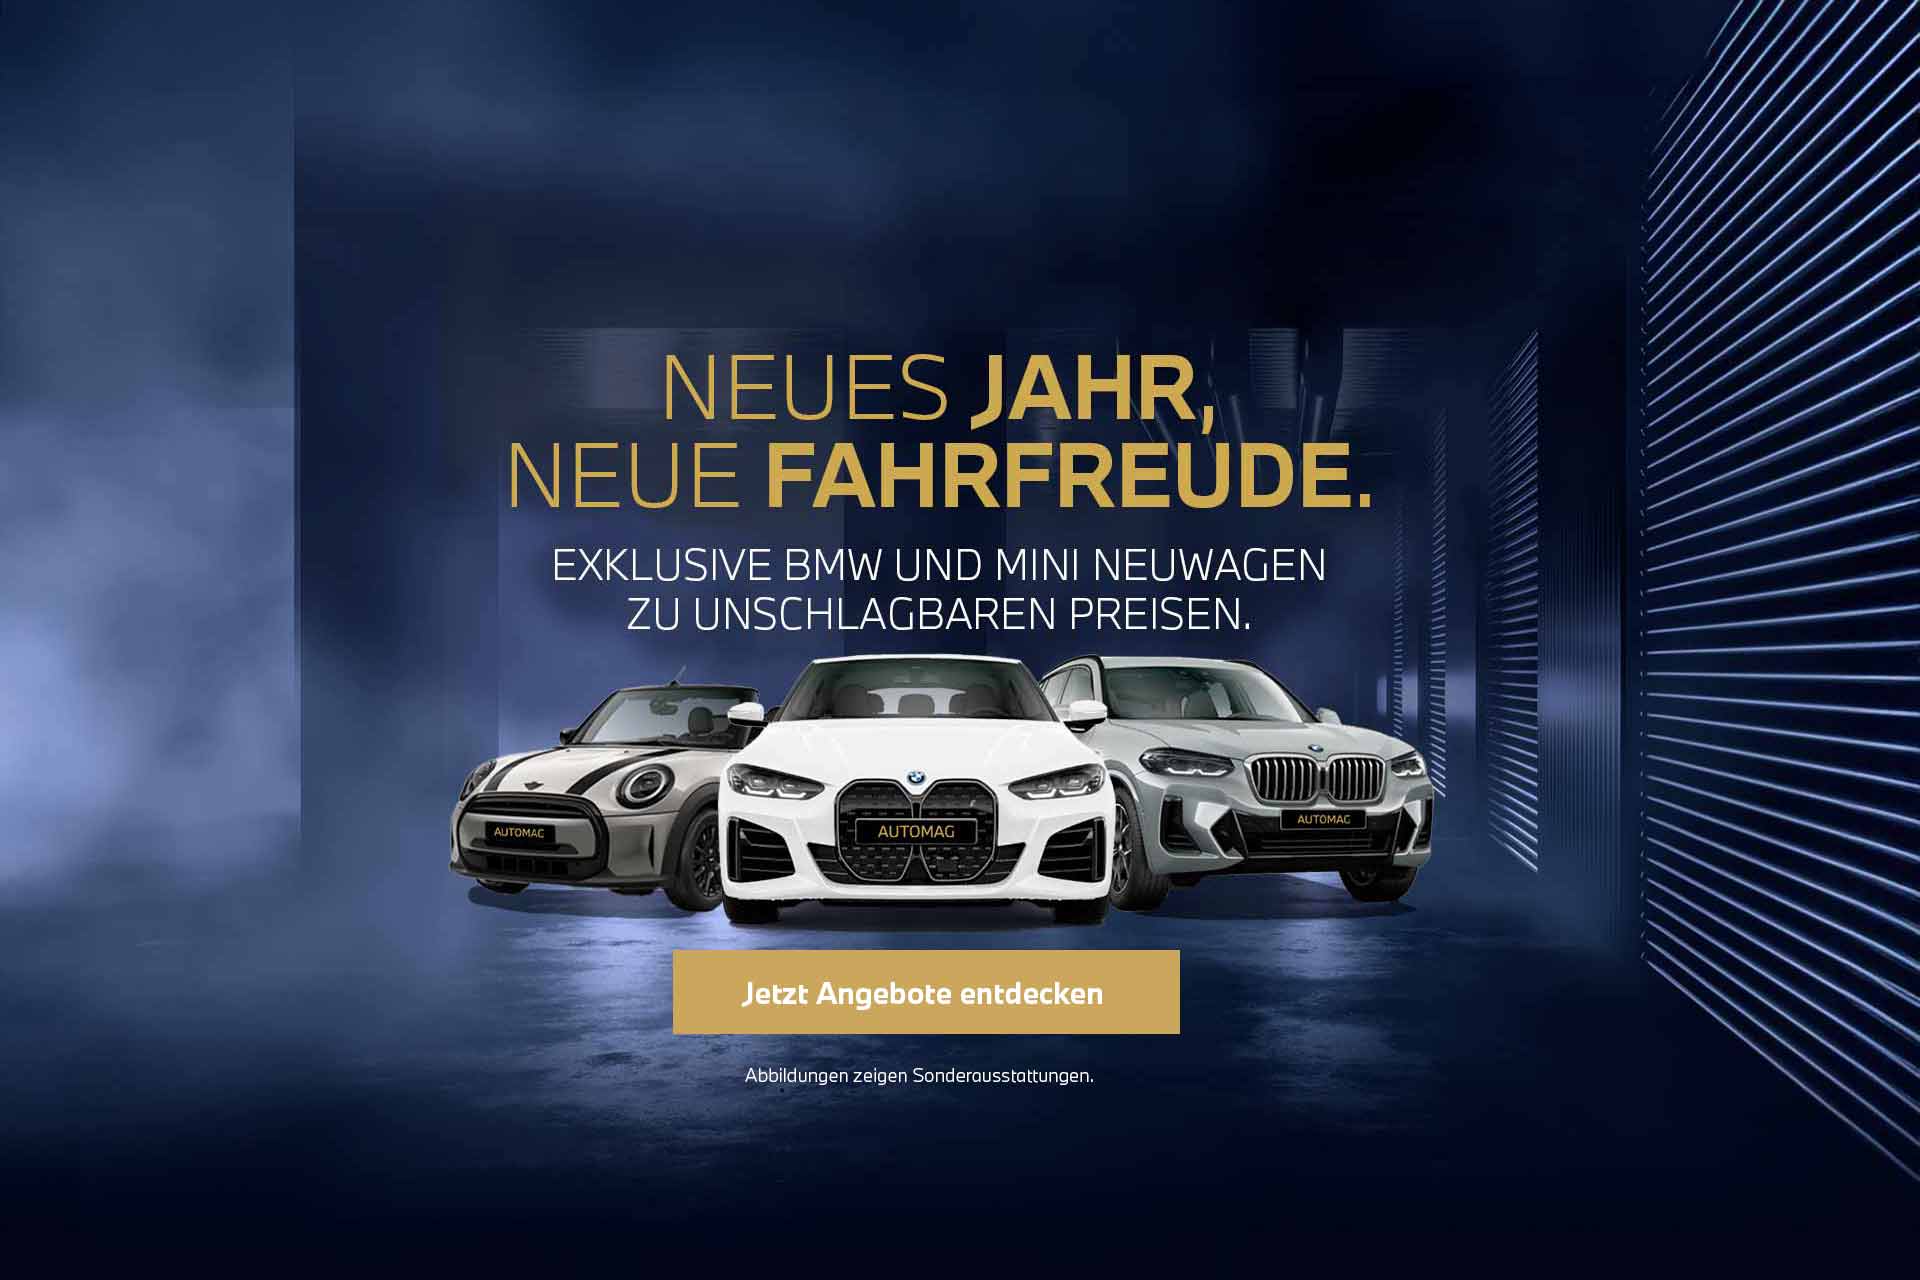 BMW Niederlassung Stuttgart - Ihr Partner beim Autokauf